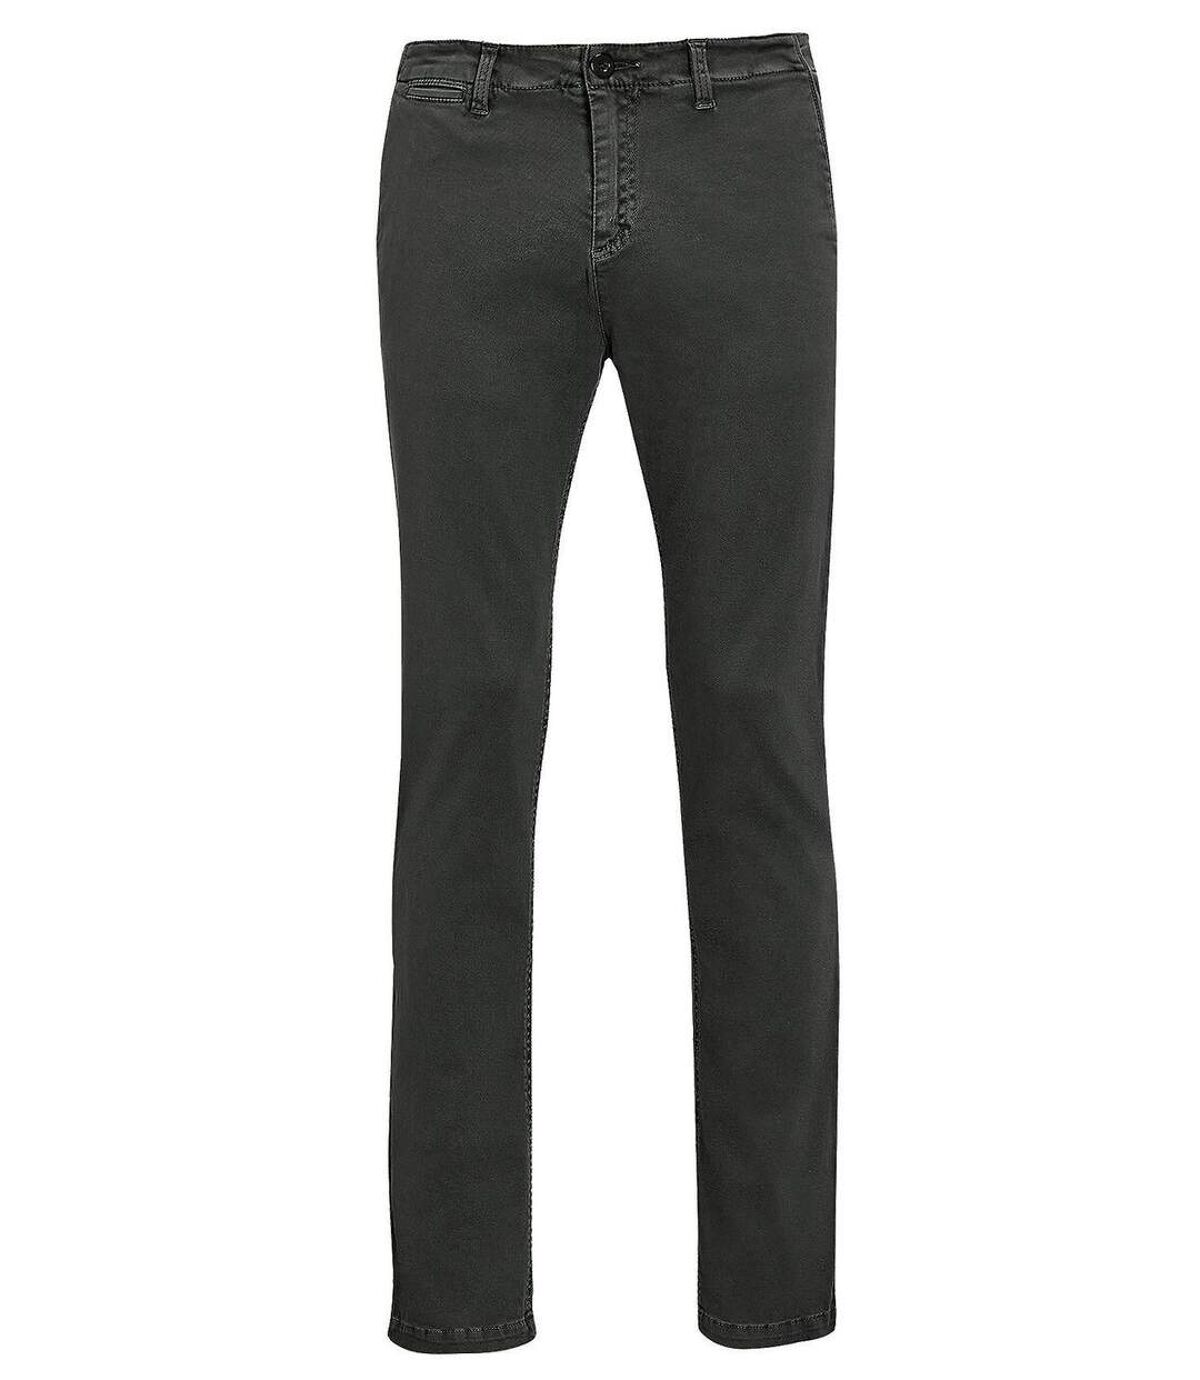 pantalon toile stretch homme - 01424 L33 - gris anthracite